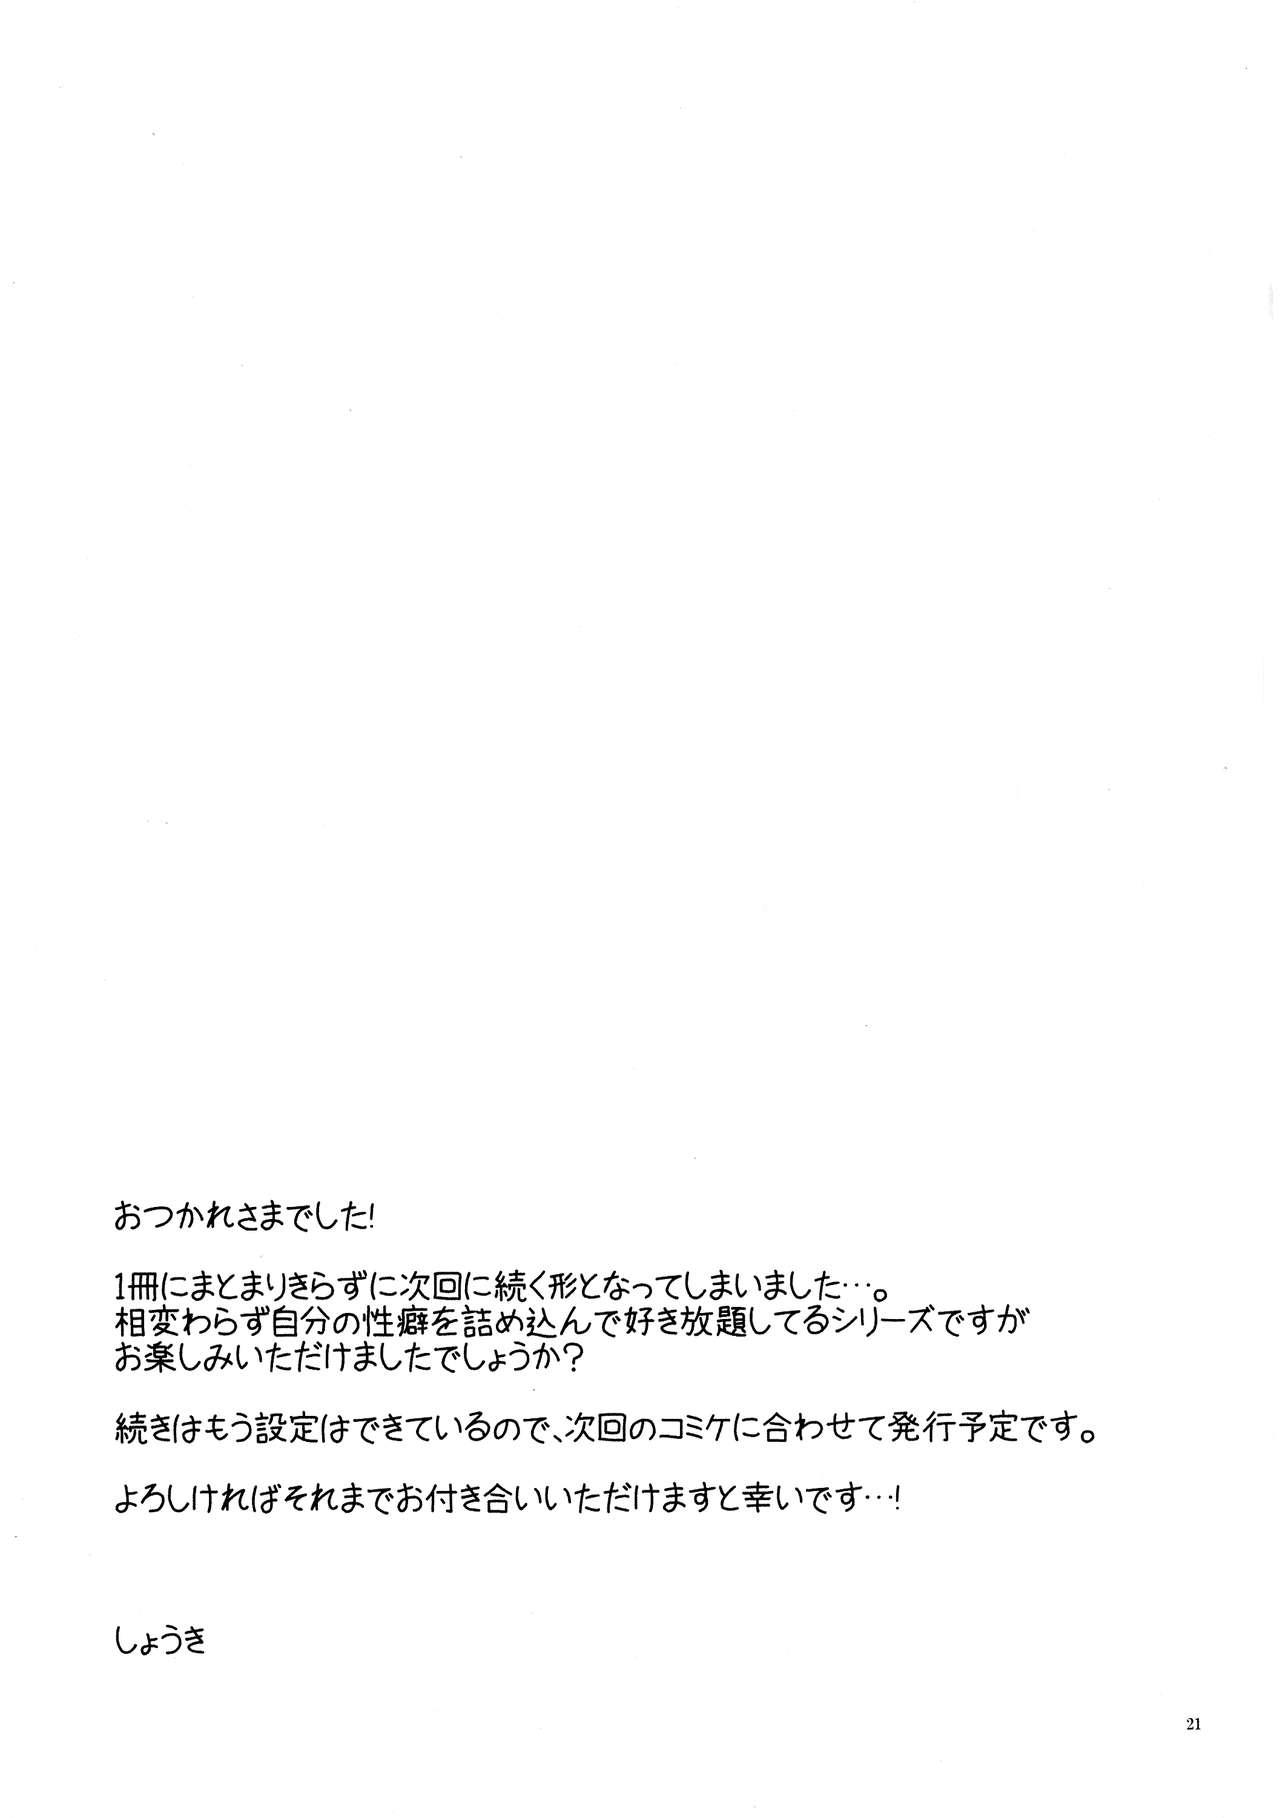 Baile Kono Kyoukai ni wa Tenshi ga Iru. 3 - El shaddai Hymen - Page 21